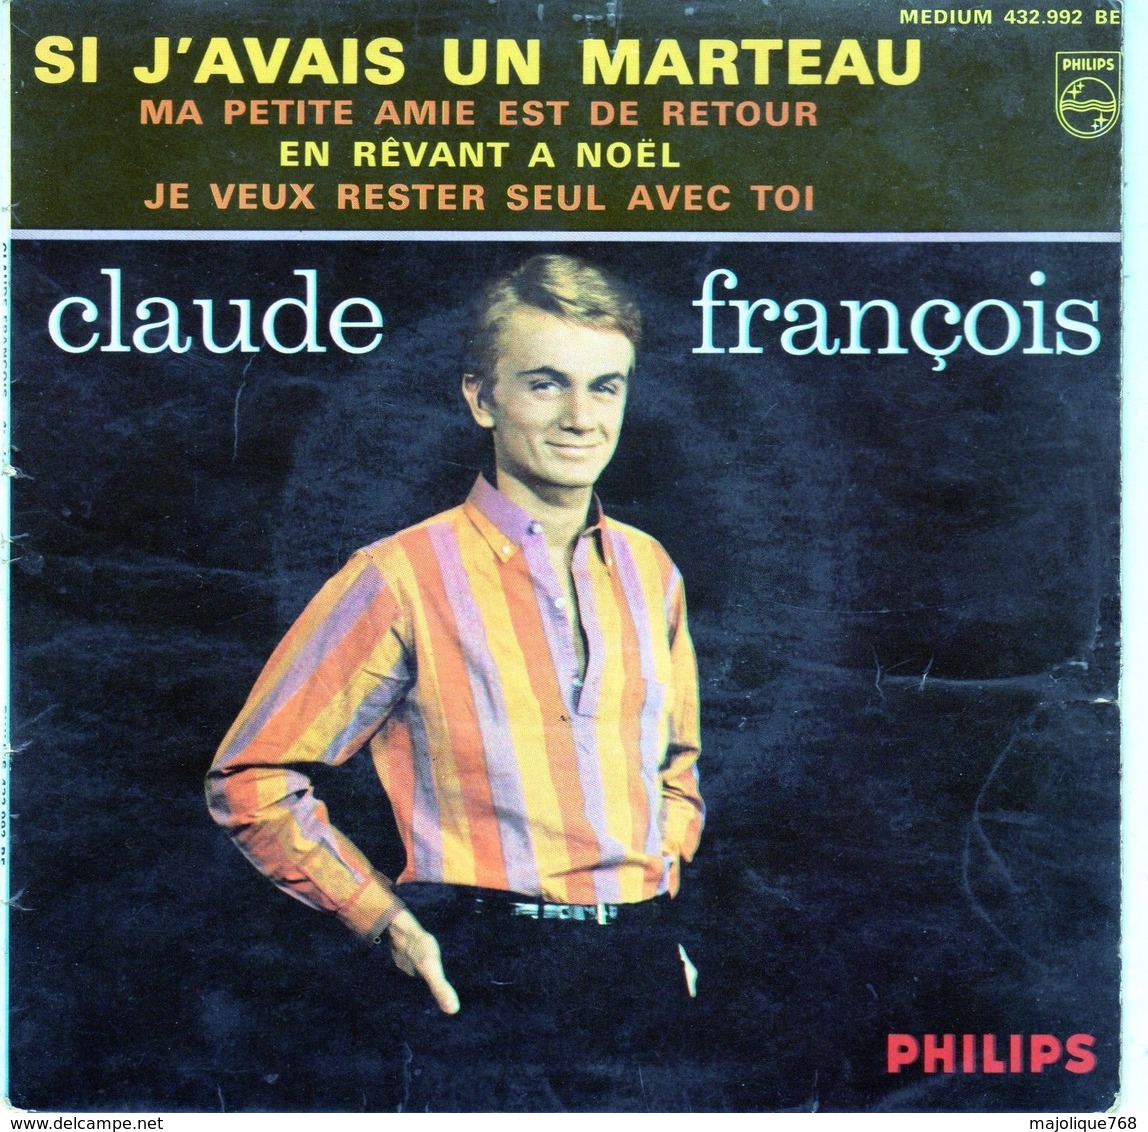 Pochette Sans Disque - Claude François - Si J'avais Un Marteau - Philips 432.992 BE 6 1963 - Autres - Musique Française